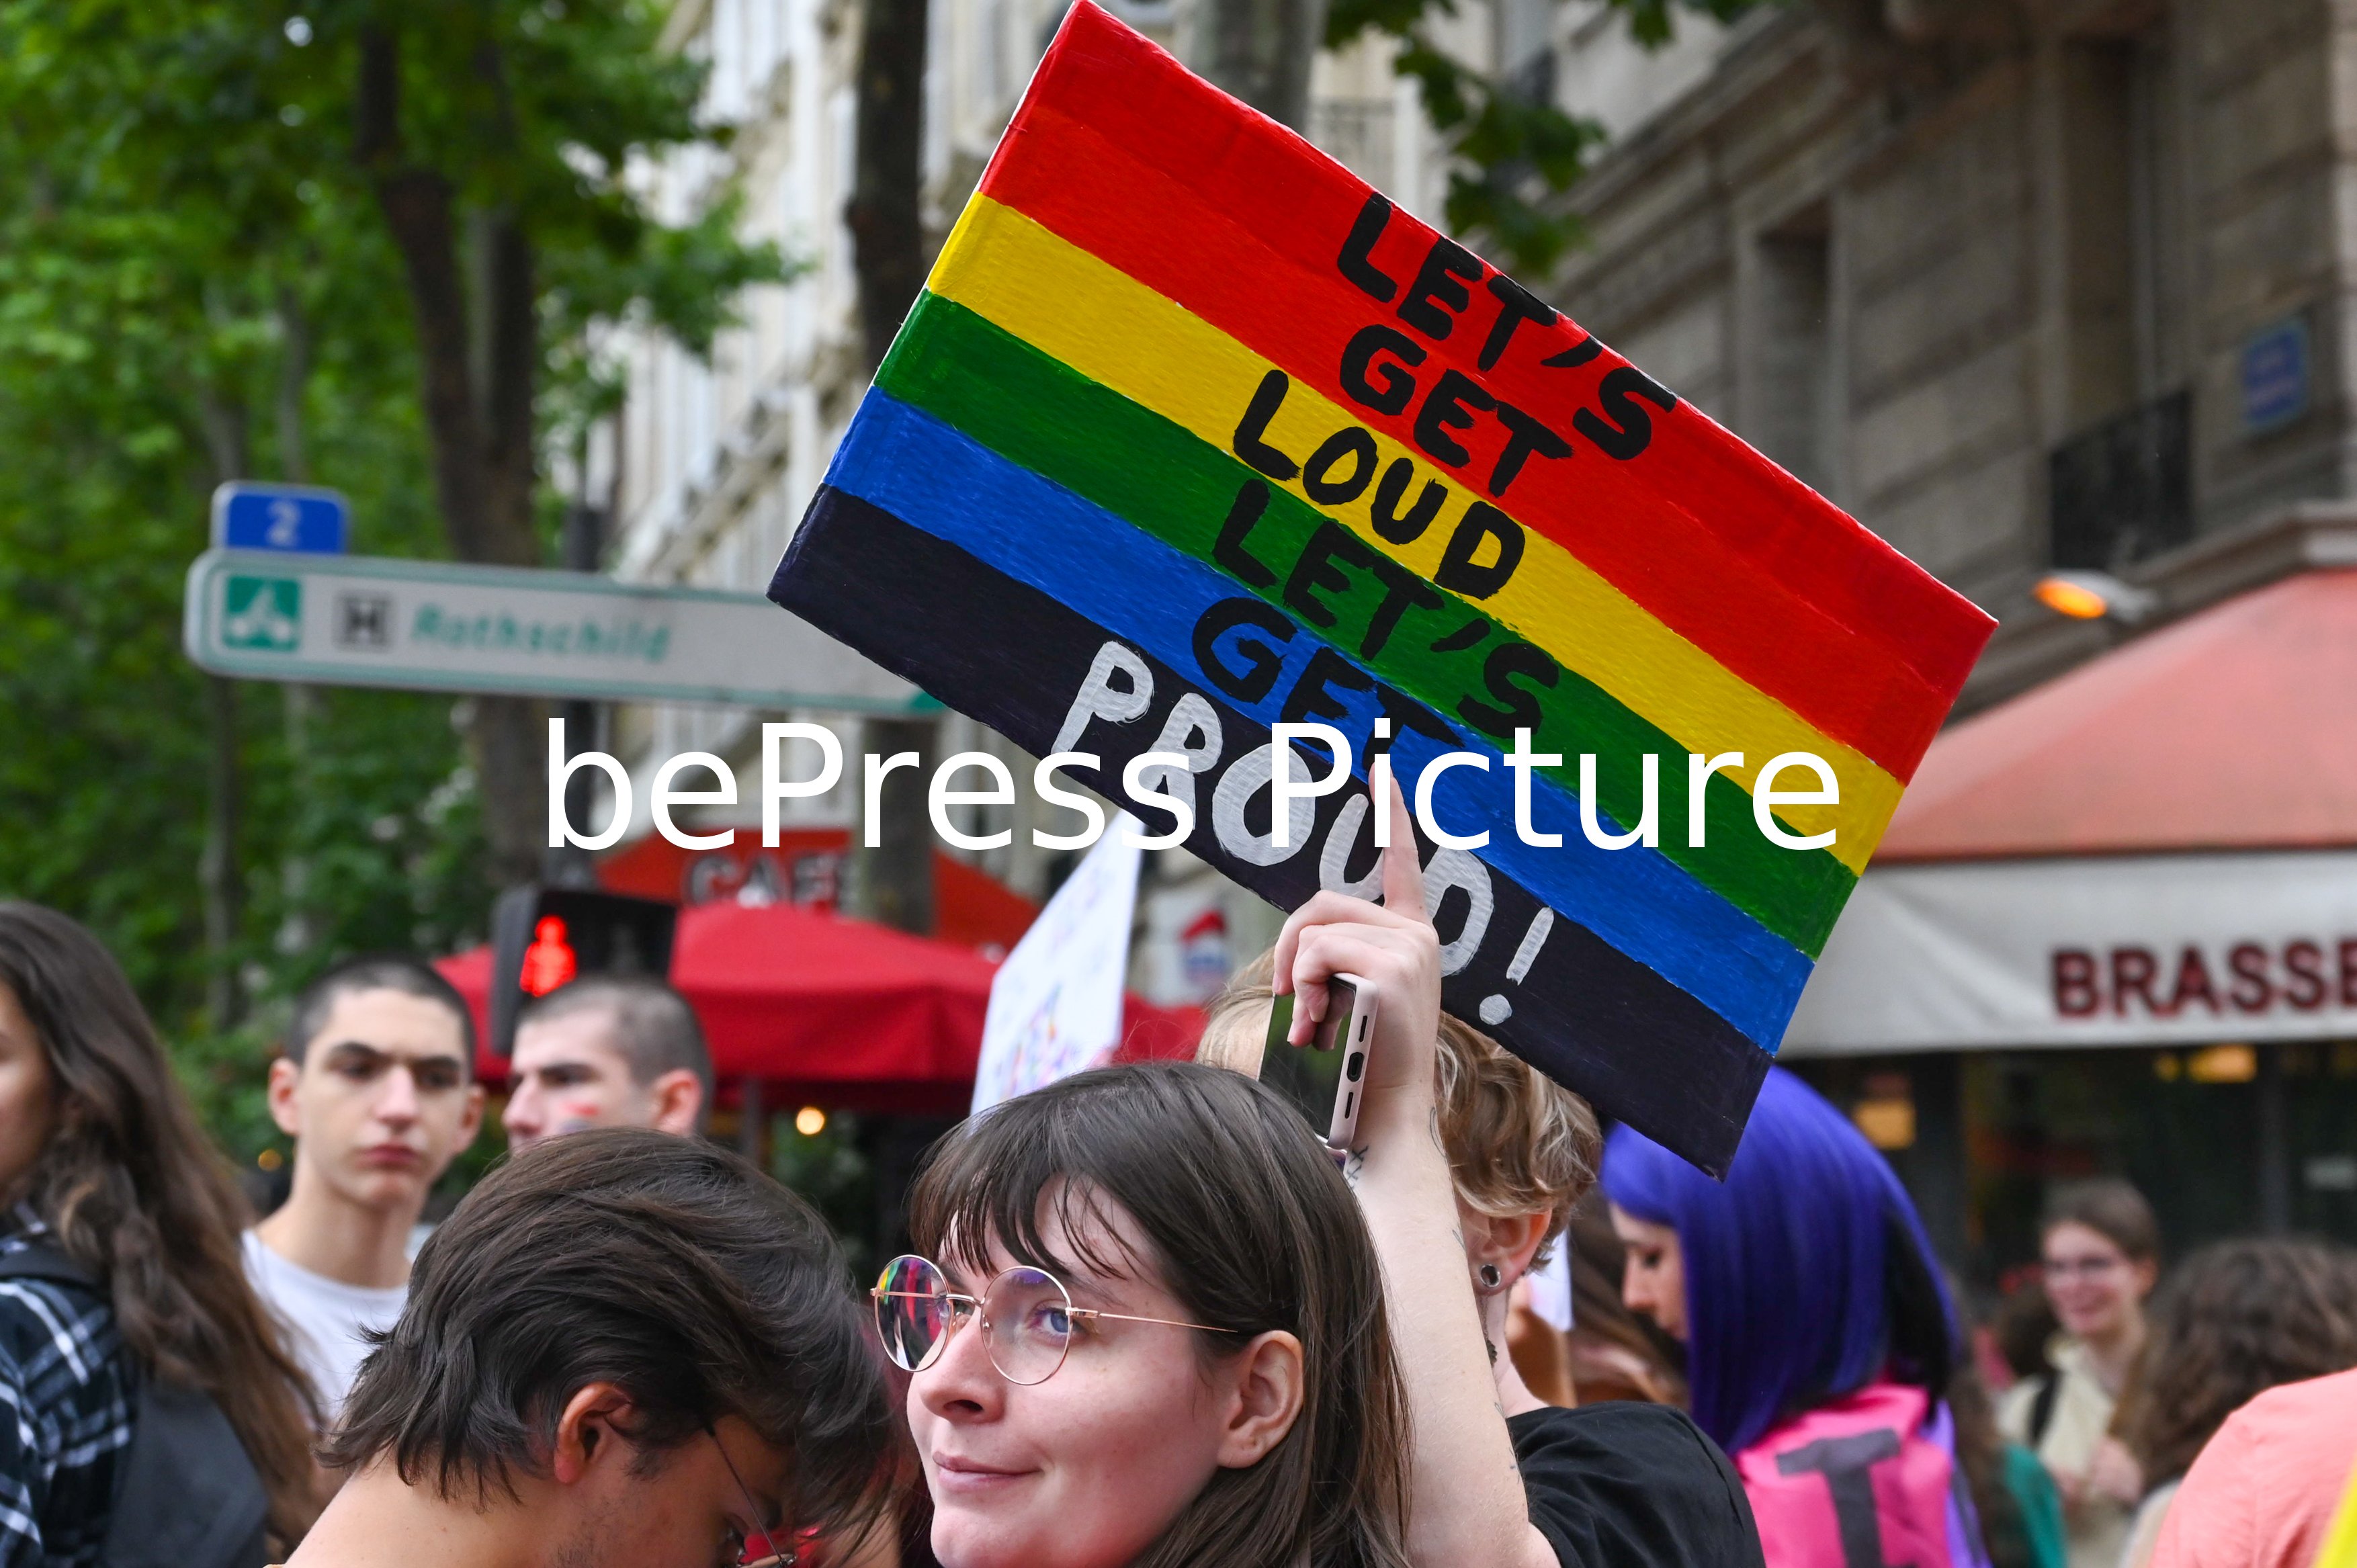 FRANCE : GAY PRIDE A PARIS - GAY PRIDE IN PARIS